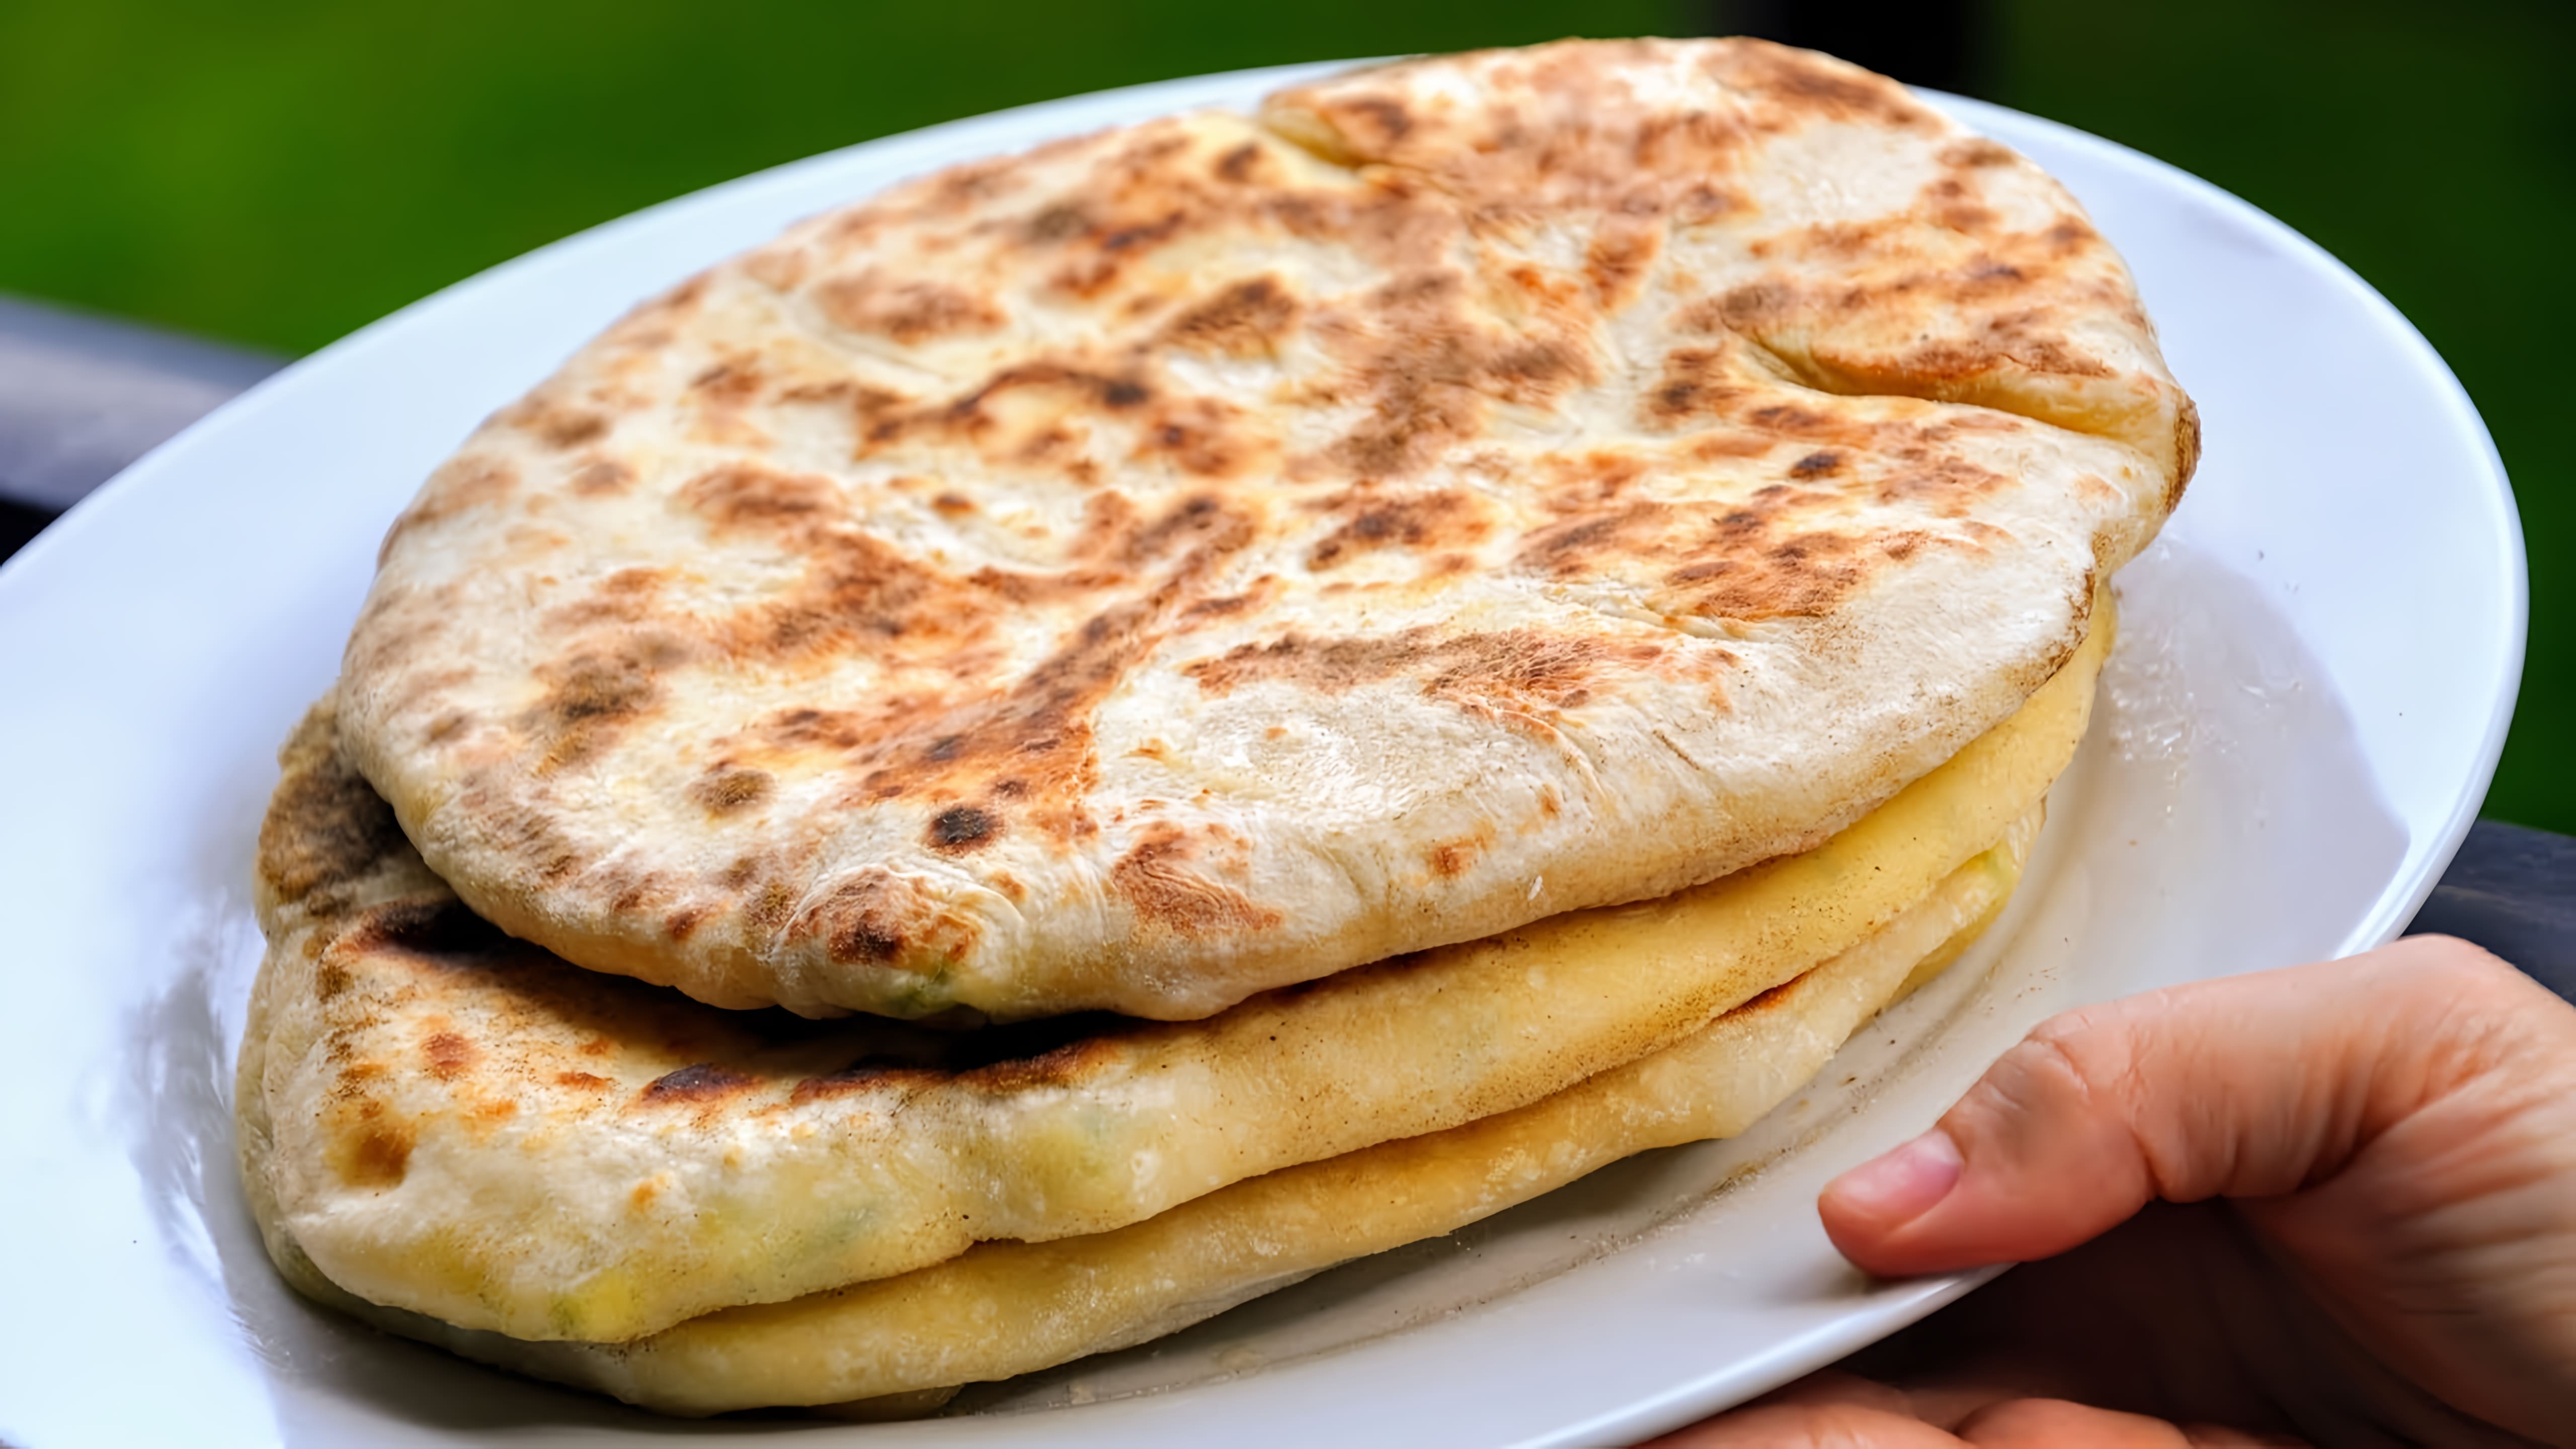 Видео: Самый простой и быстрый Хачапури на сковороде, вкусные и быстрые сырные лепешки на завтрак Ivan Kas